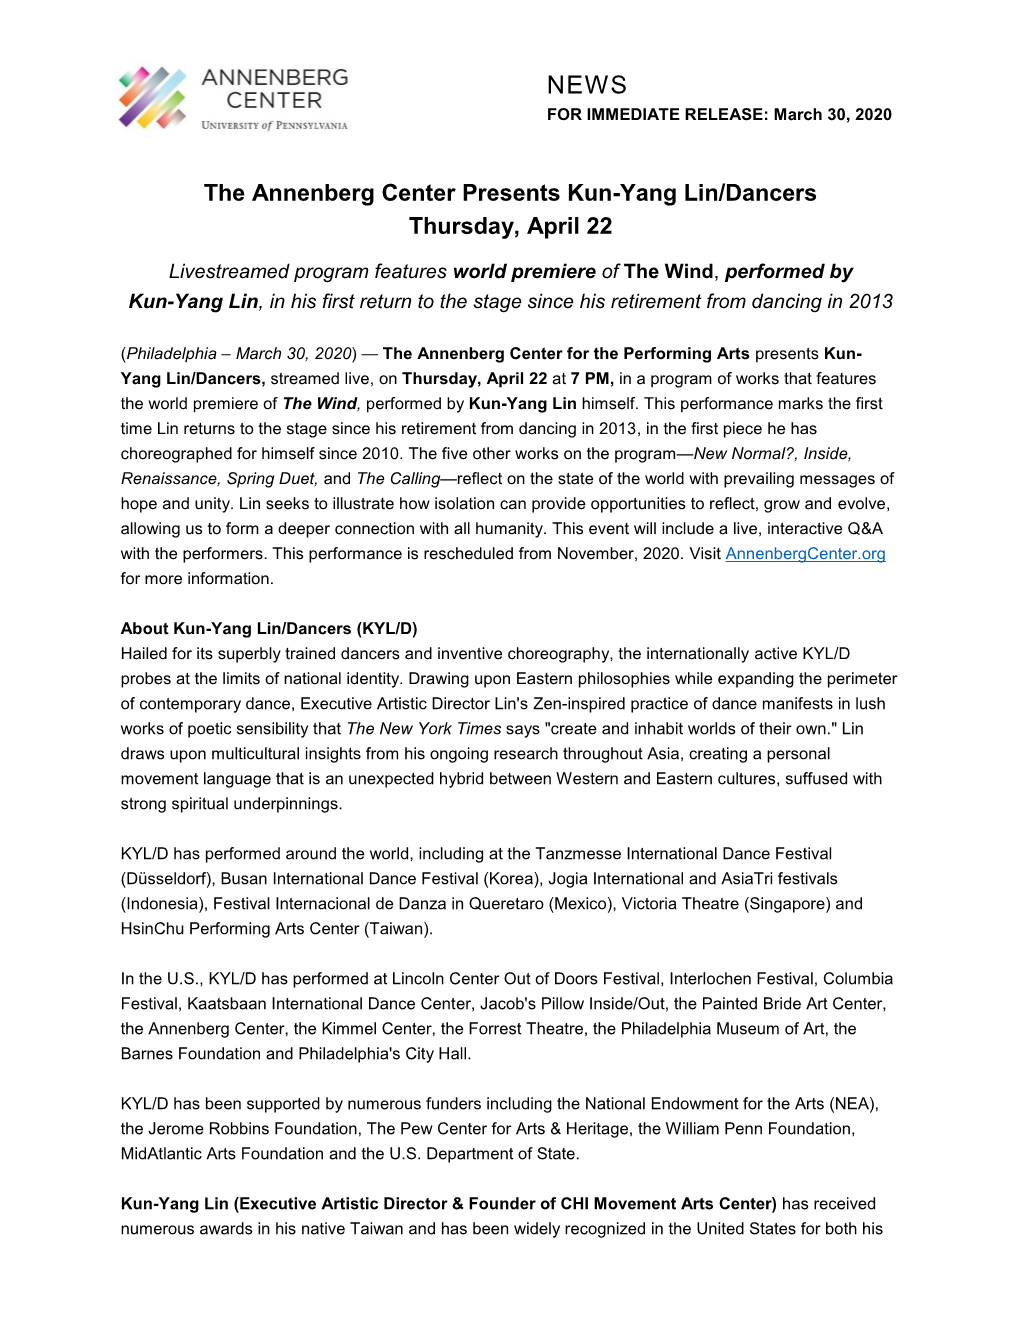 The Annenberg Center Presents Kun-Yang Lin/Dancers Thursday, April 22